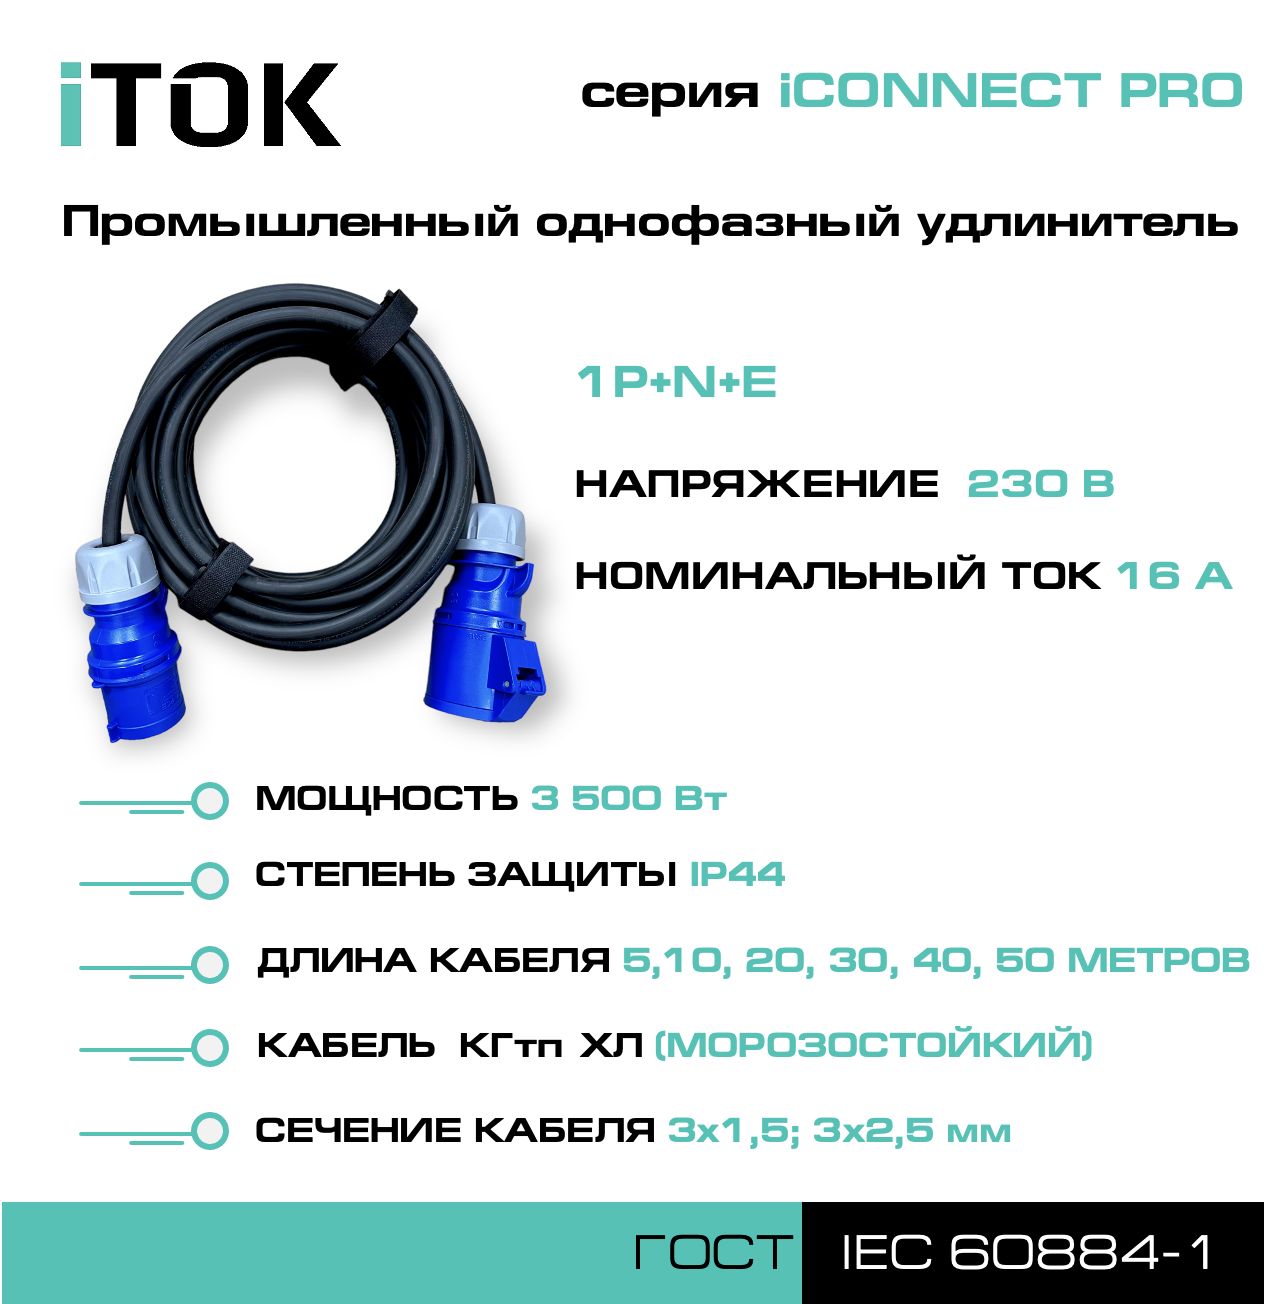 удлинитель силовой с заземлением itok iconnect pro кгтп хл 3х2 5 мм 1 гнездо ip54 5м Удлинитель силовой iTOK iCONNECT PRO 230В 16А 5м КГтп-ХЛ 3х1,5 мм 1P+N+E, IP44